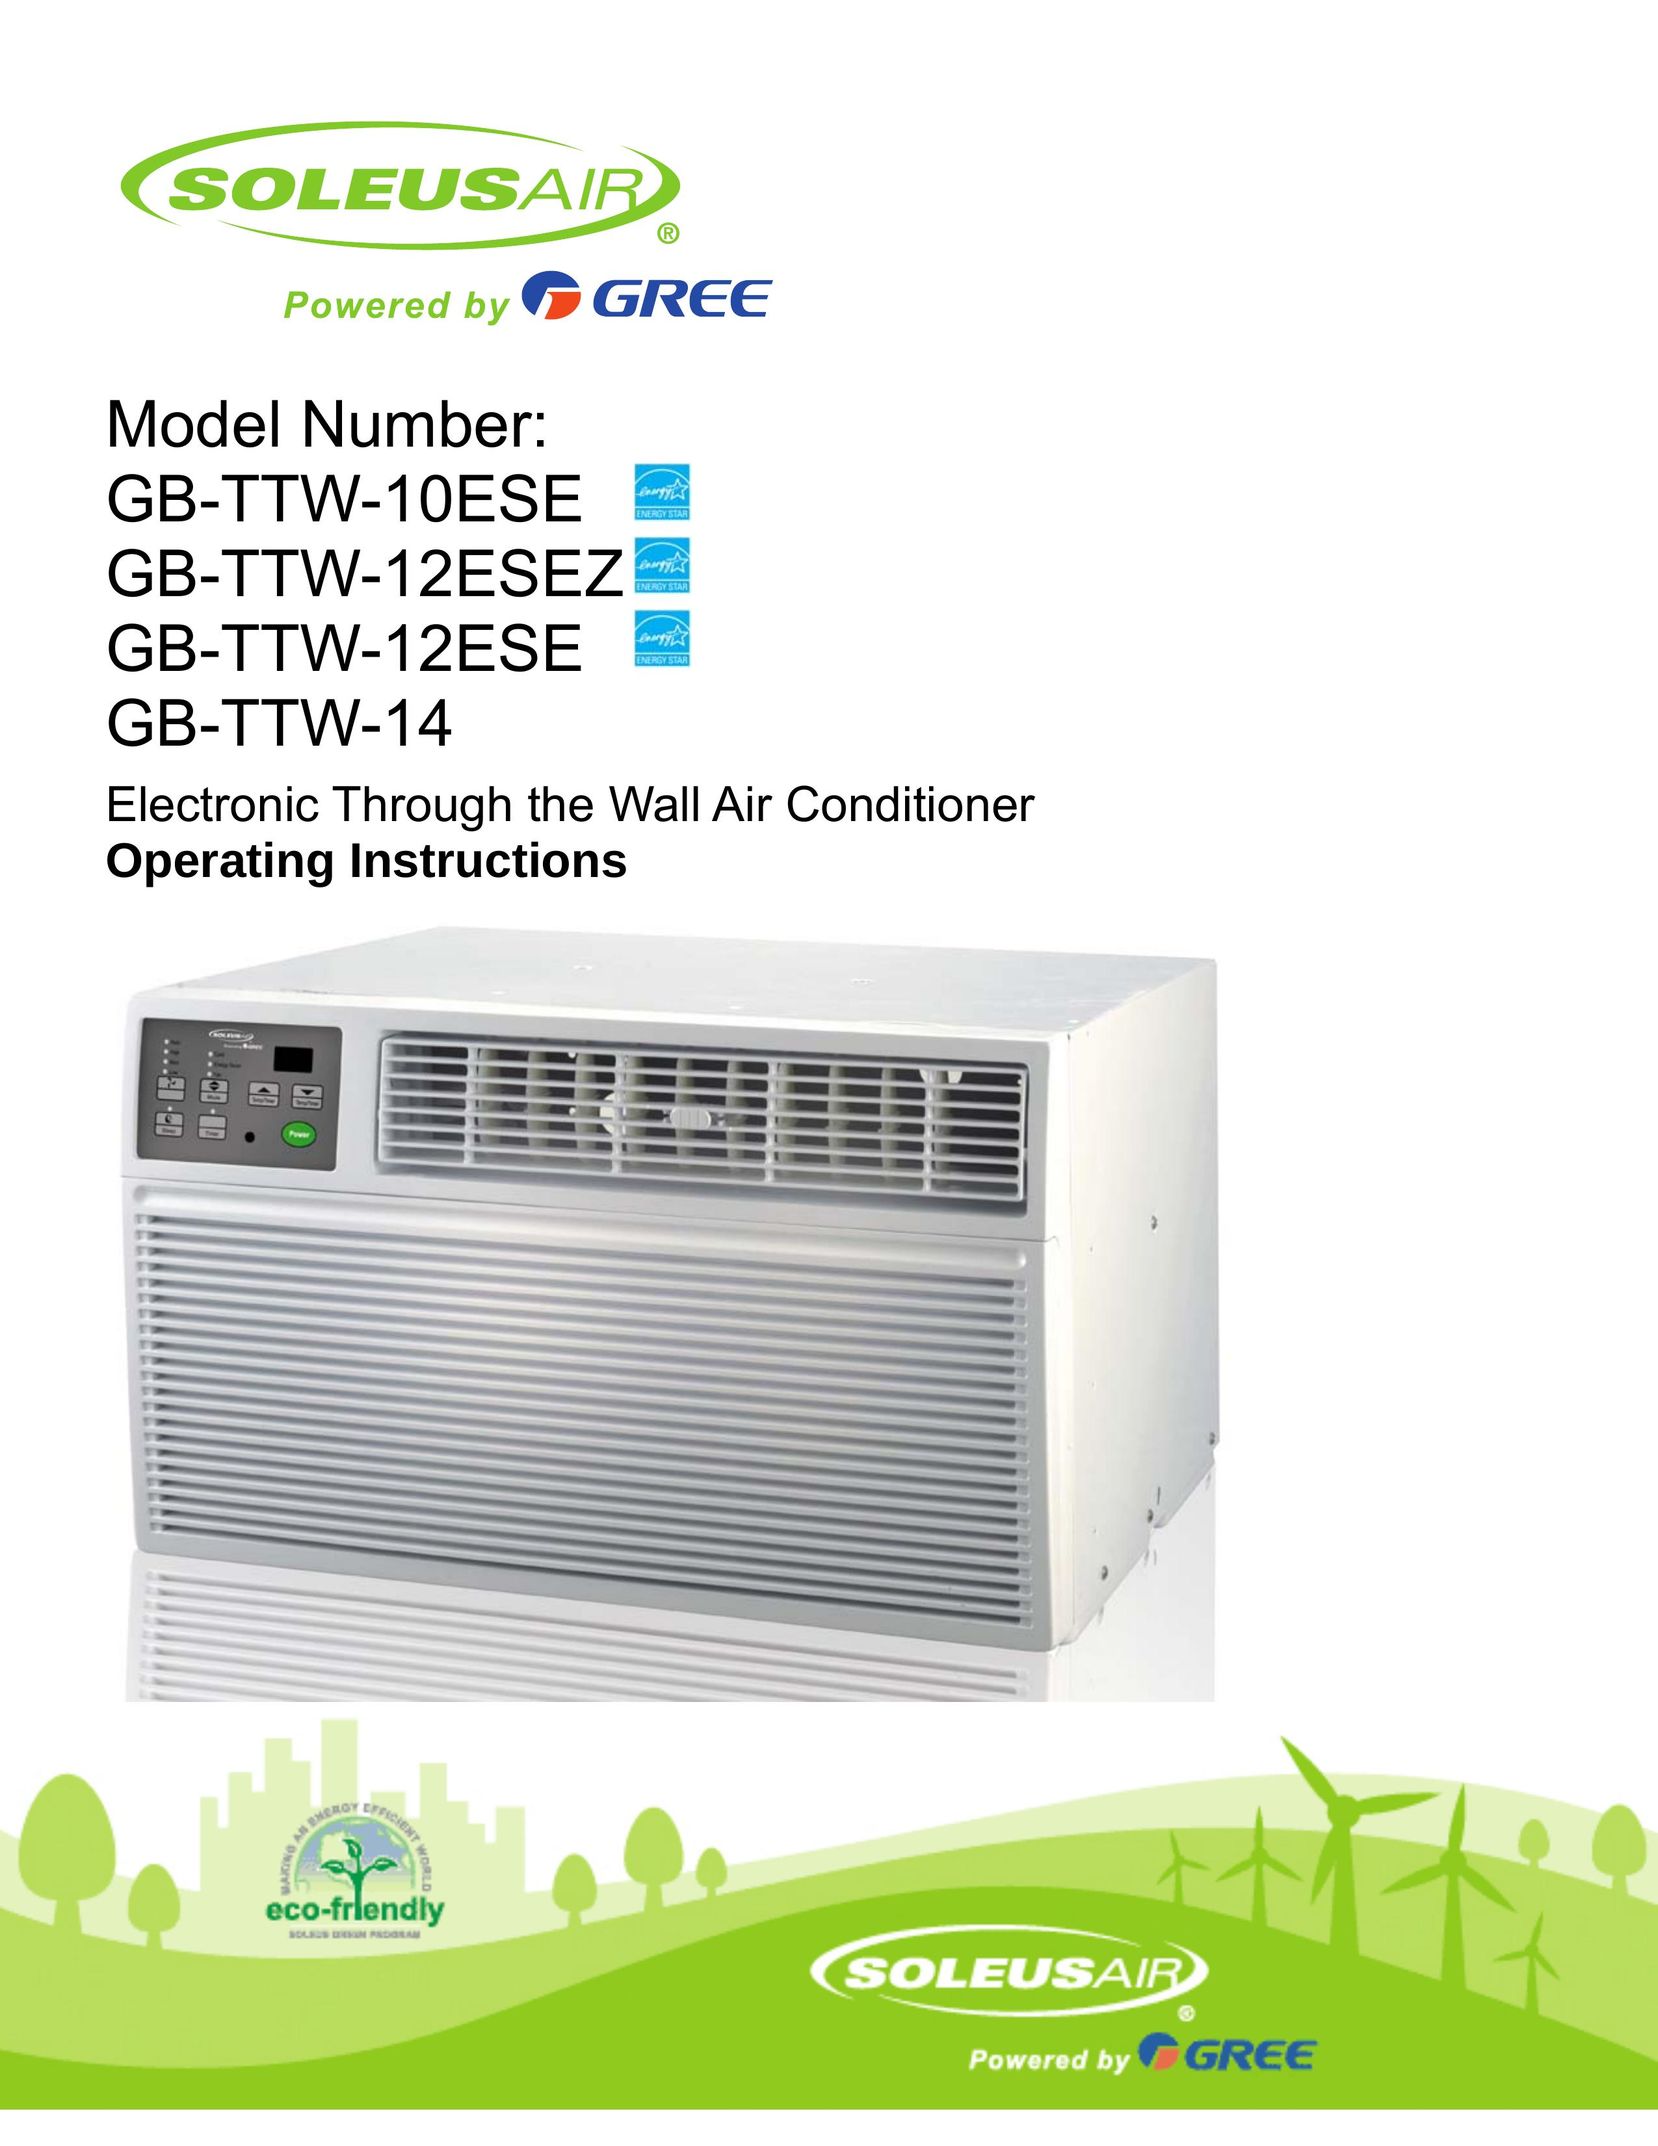 Soleus Air GB-TTW-12ESEZ Air Conditioner User Manual